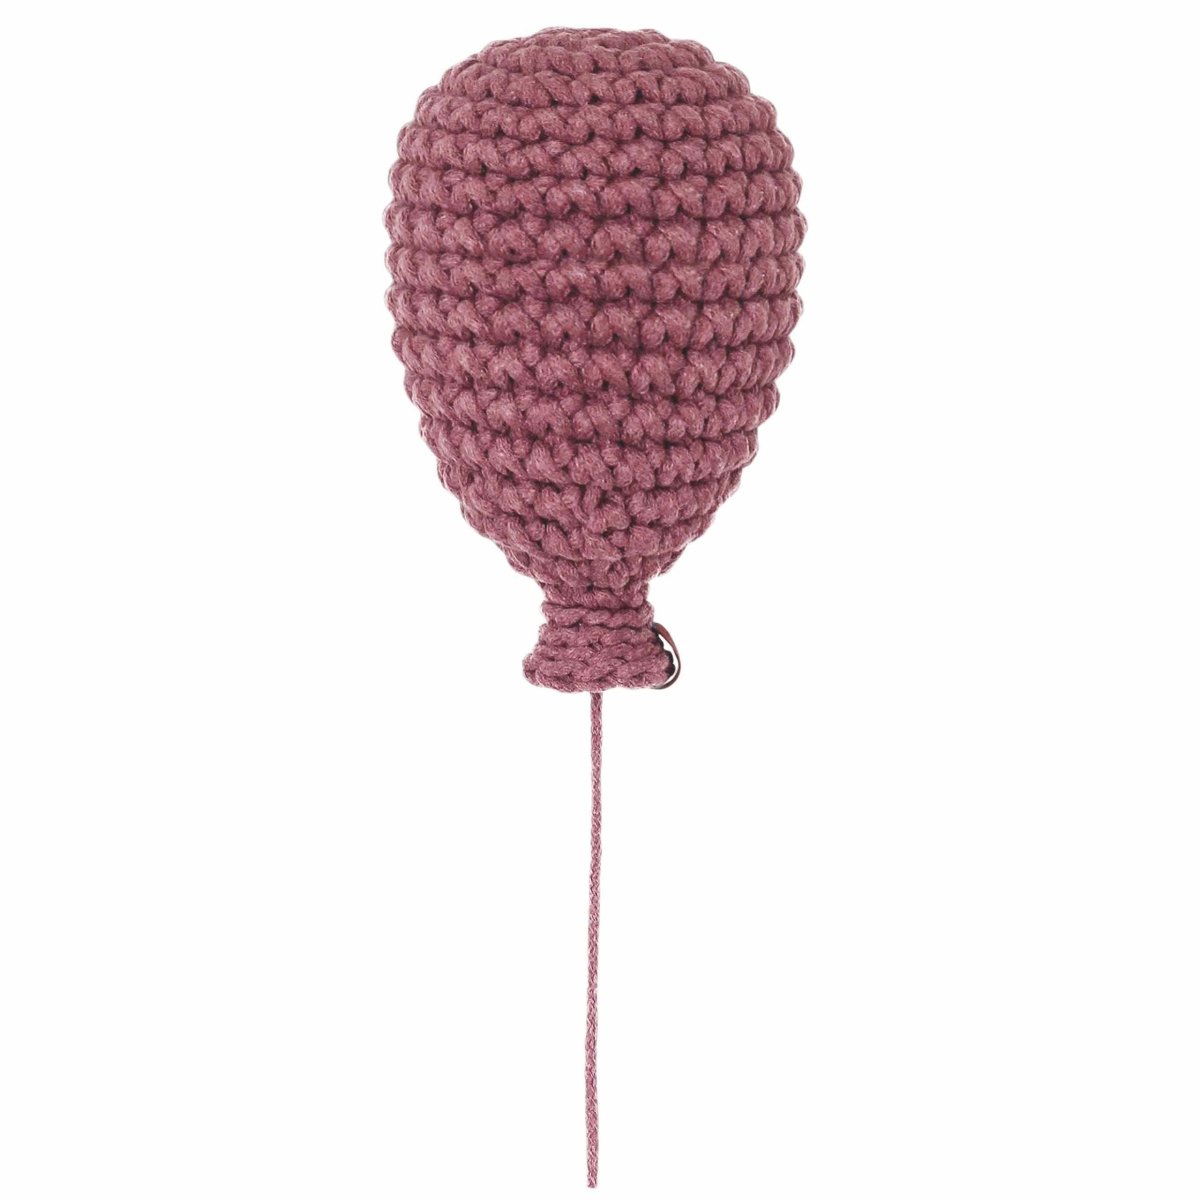 Crochet balloon | OLD ROSE - Zuri House